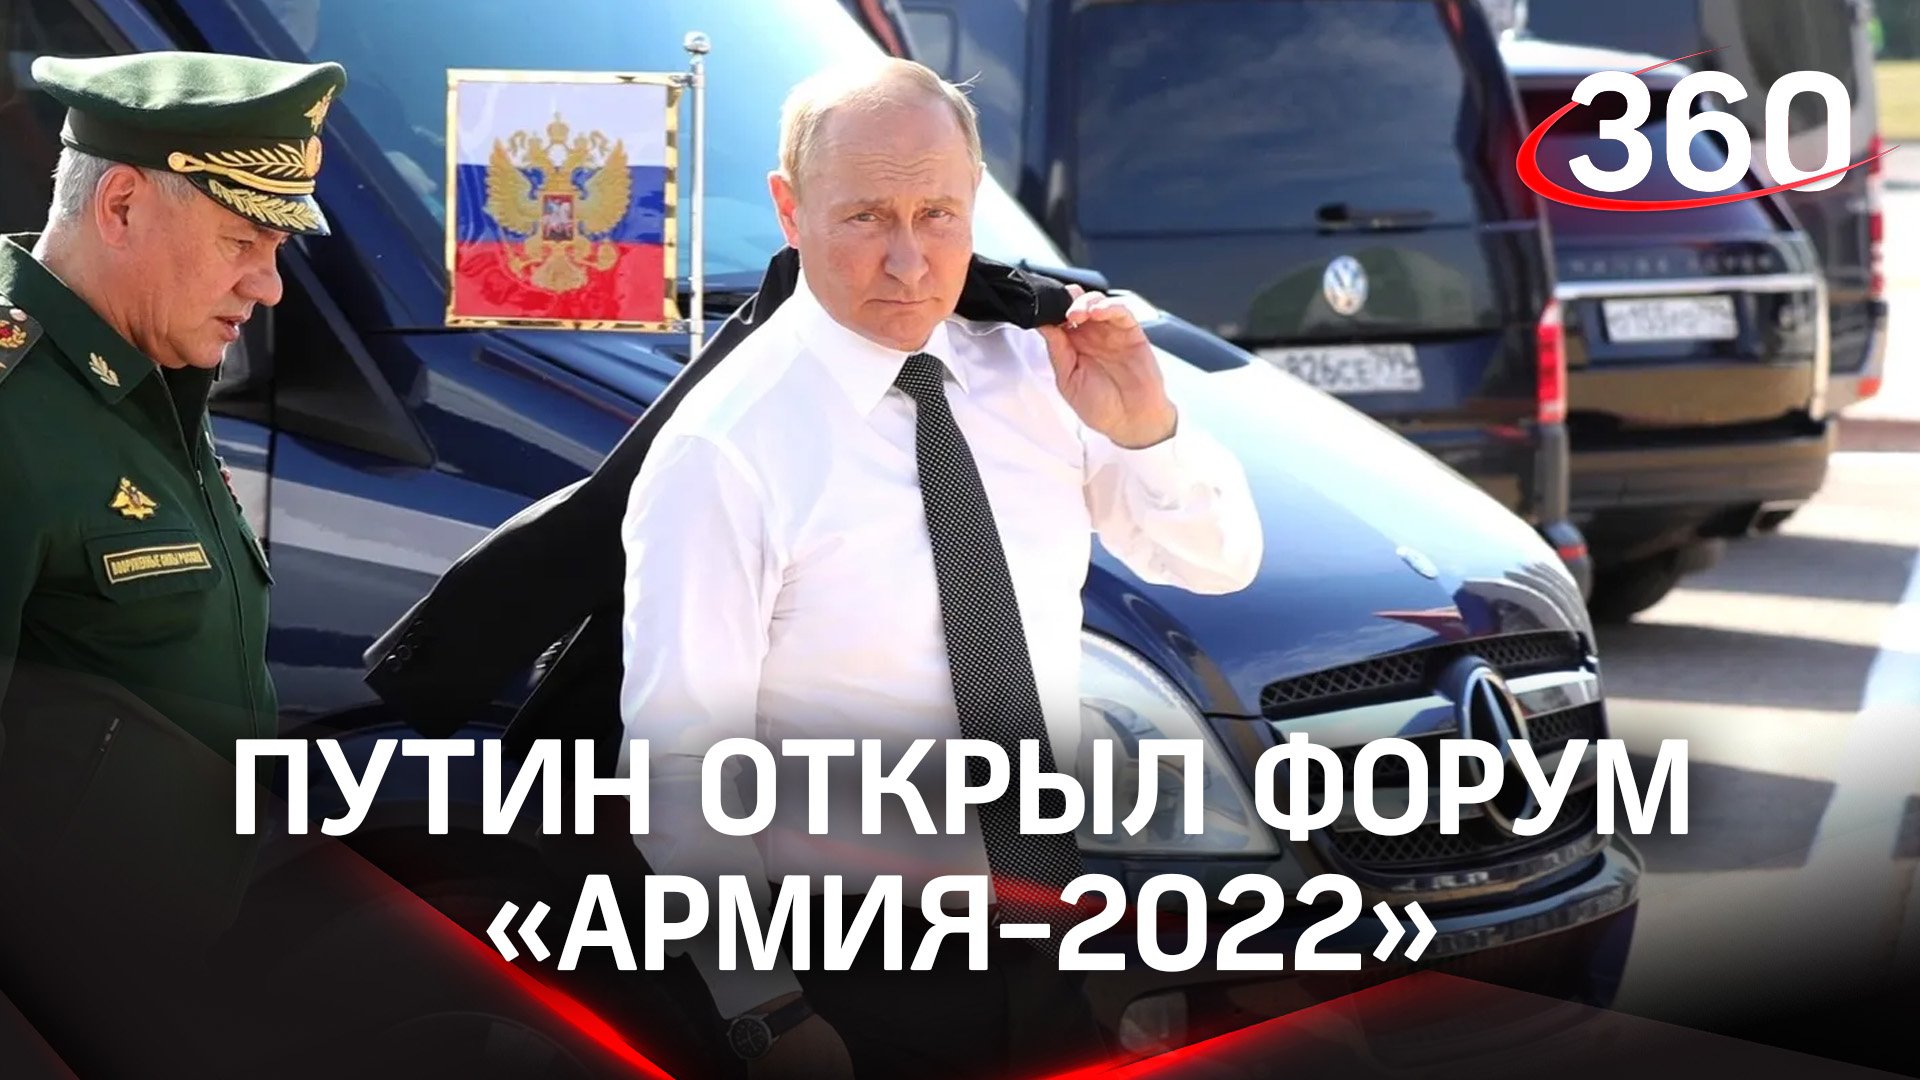 Путин открыл форум "Армия-2022" в подмосковной Кубинке